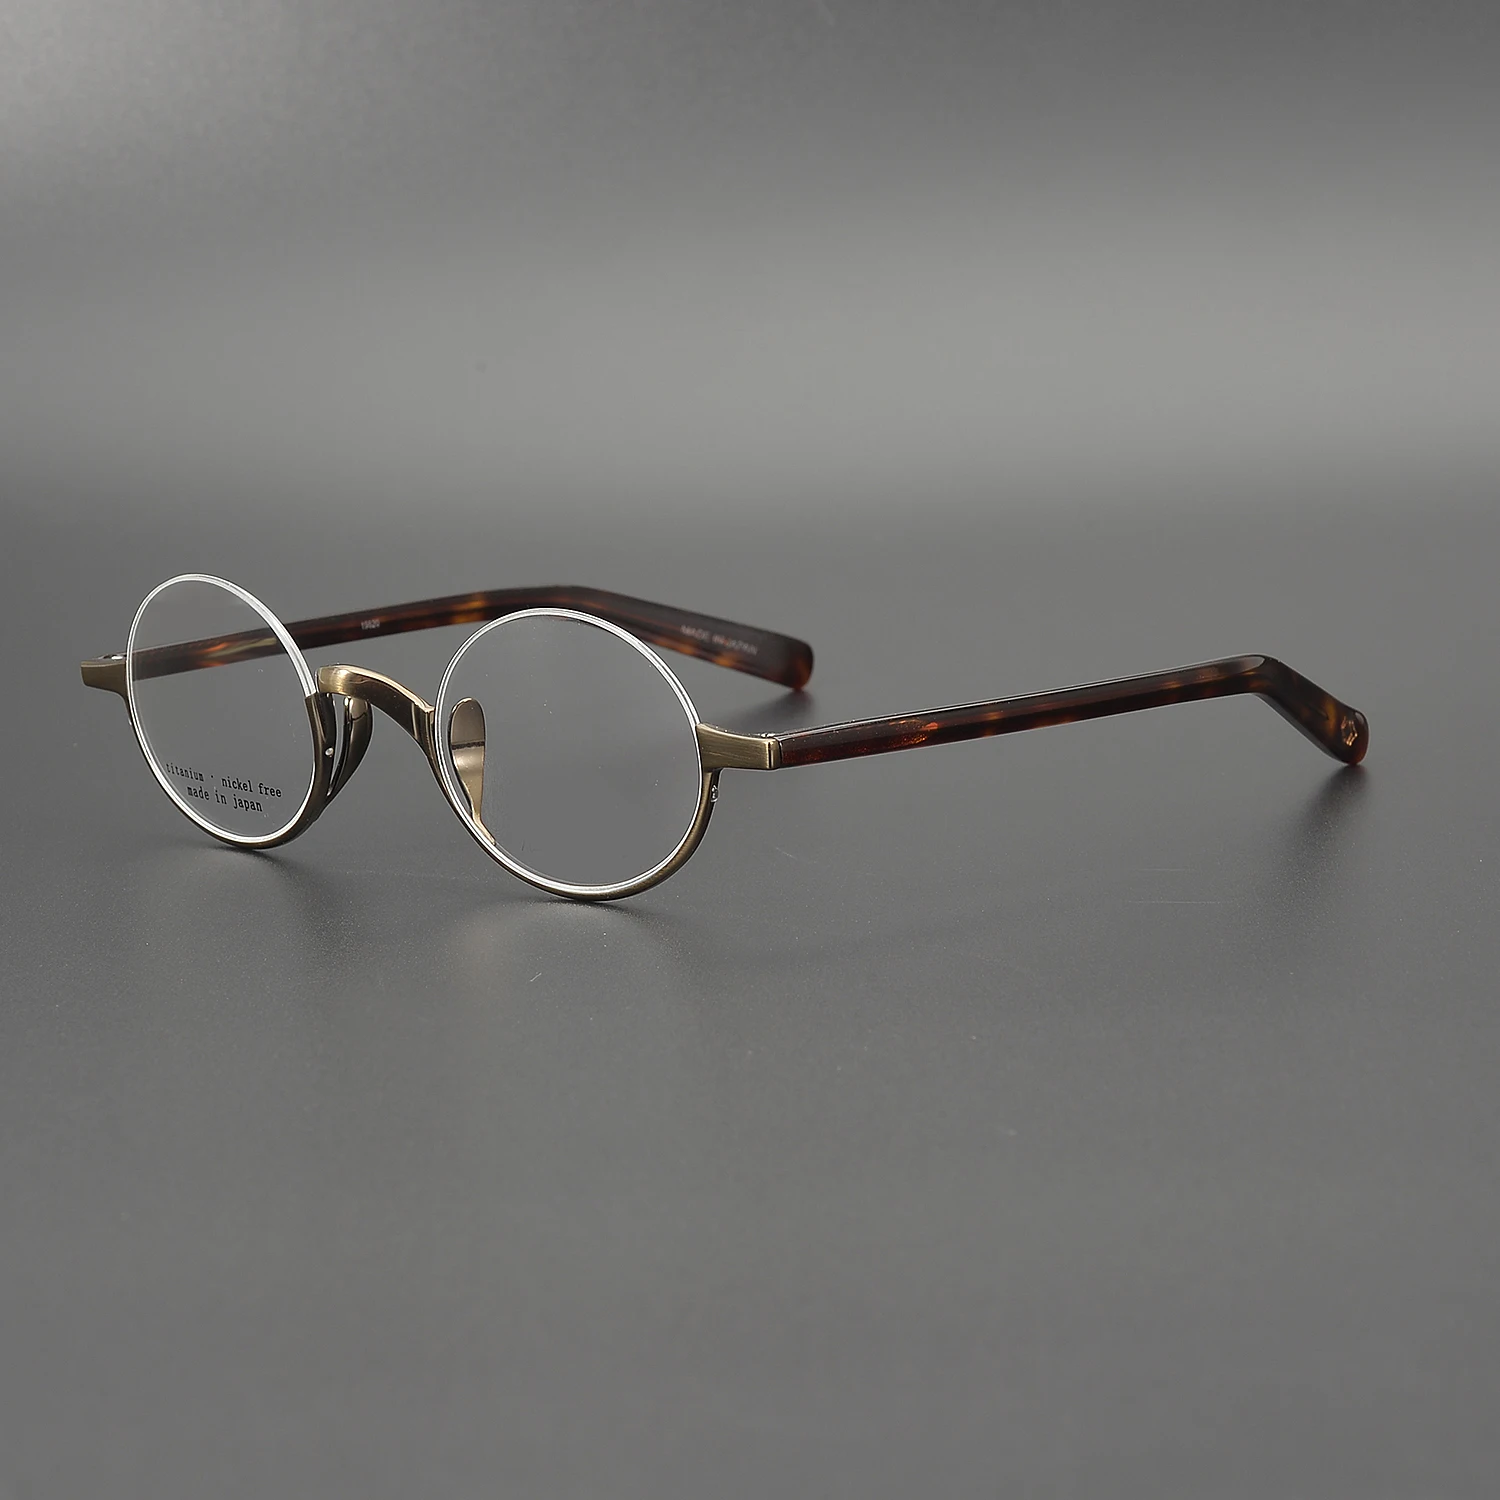 Zerosun-gafas redondas pequeñas hombre, lentes titanio para miopía graduadas, dioptrías progresivas - AliExpress